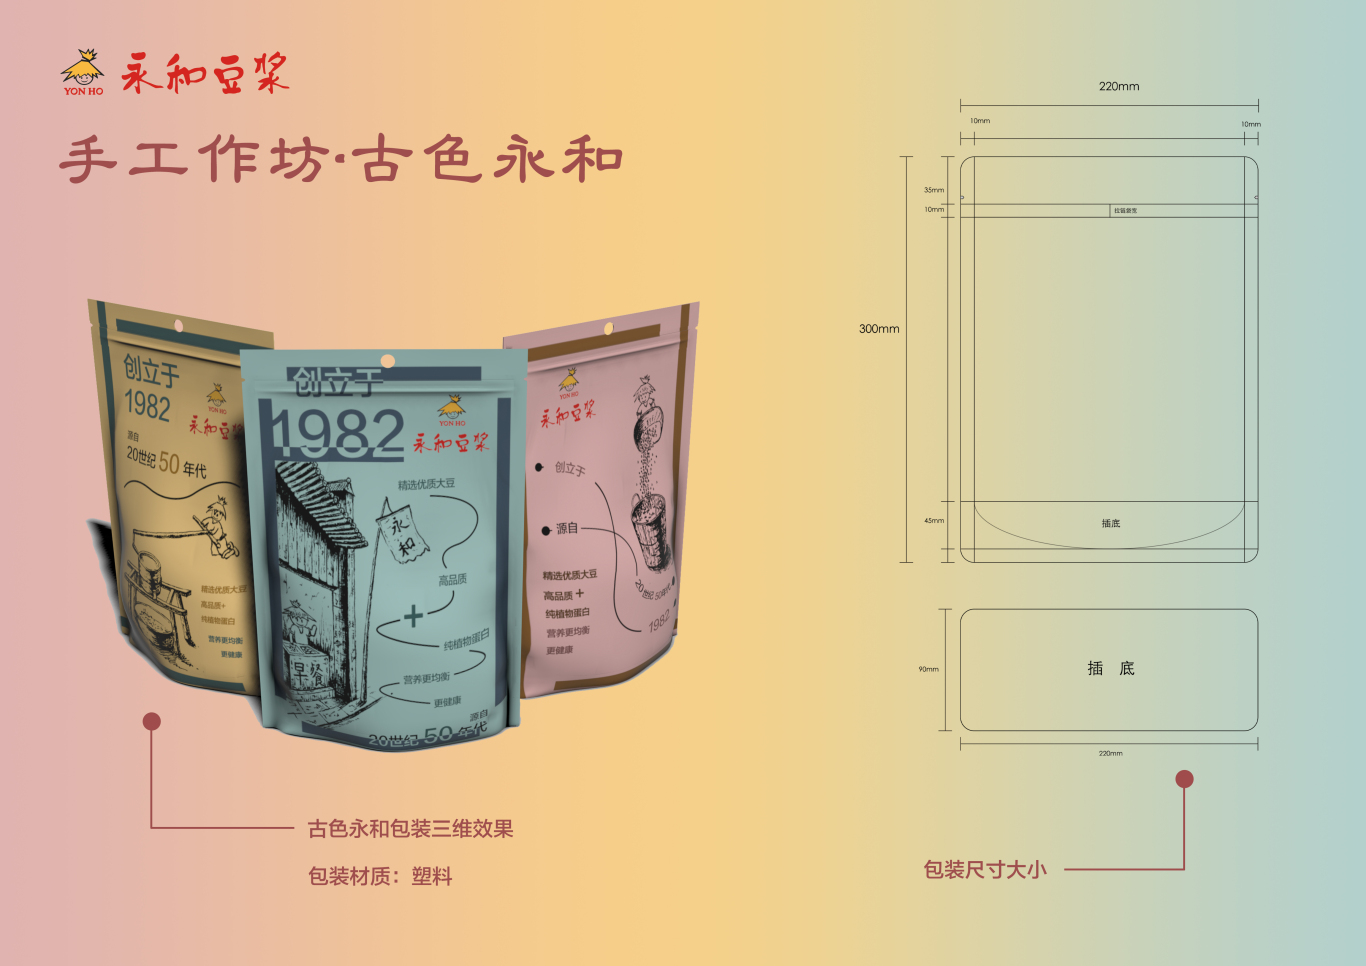 永和豆浆产品包装设计图0